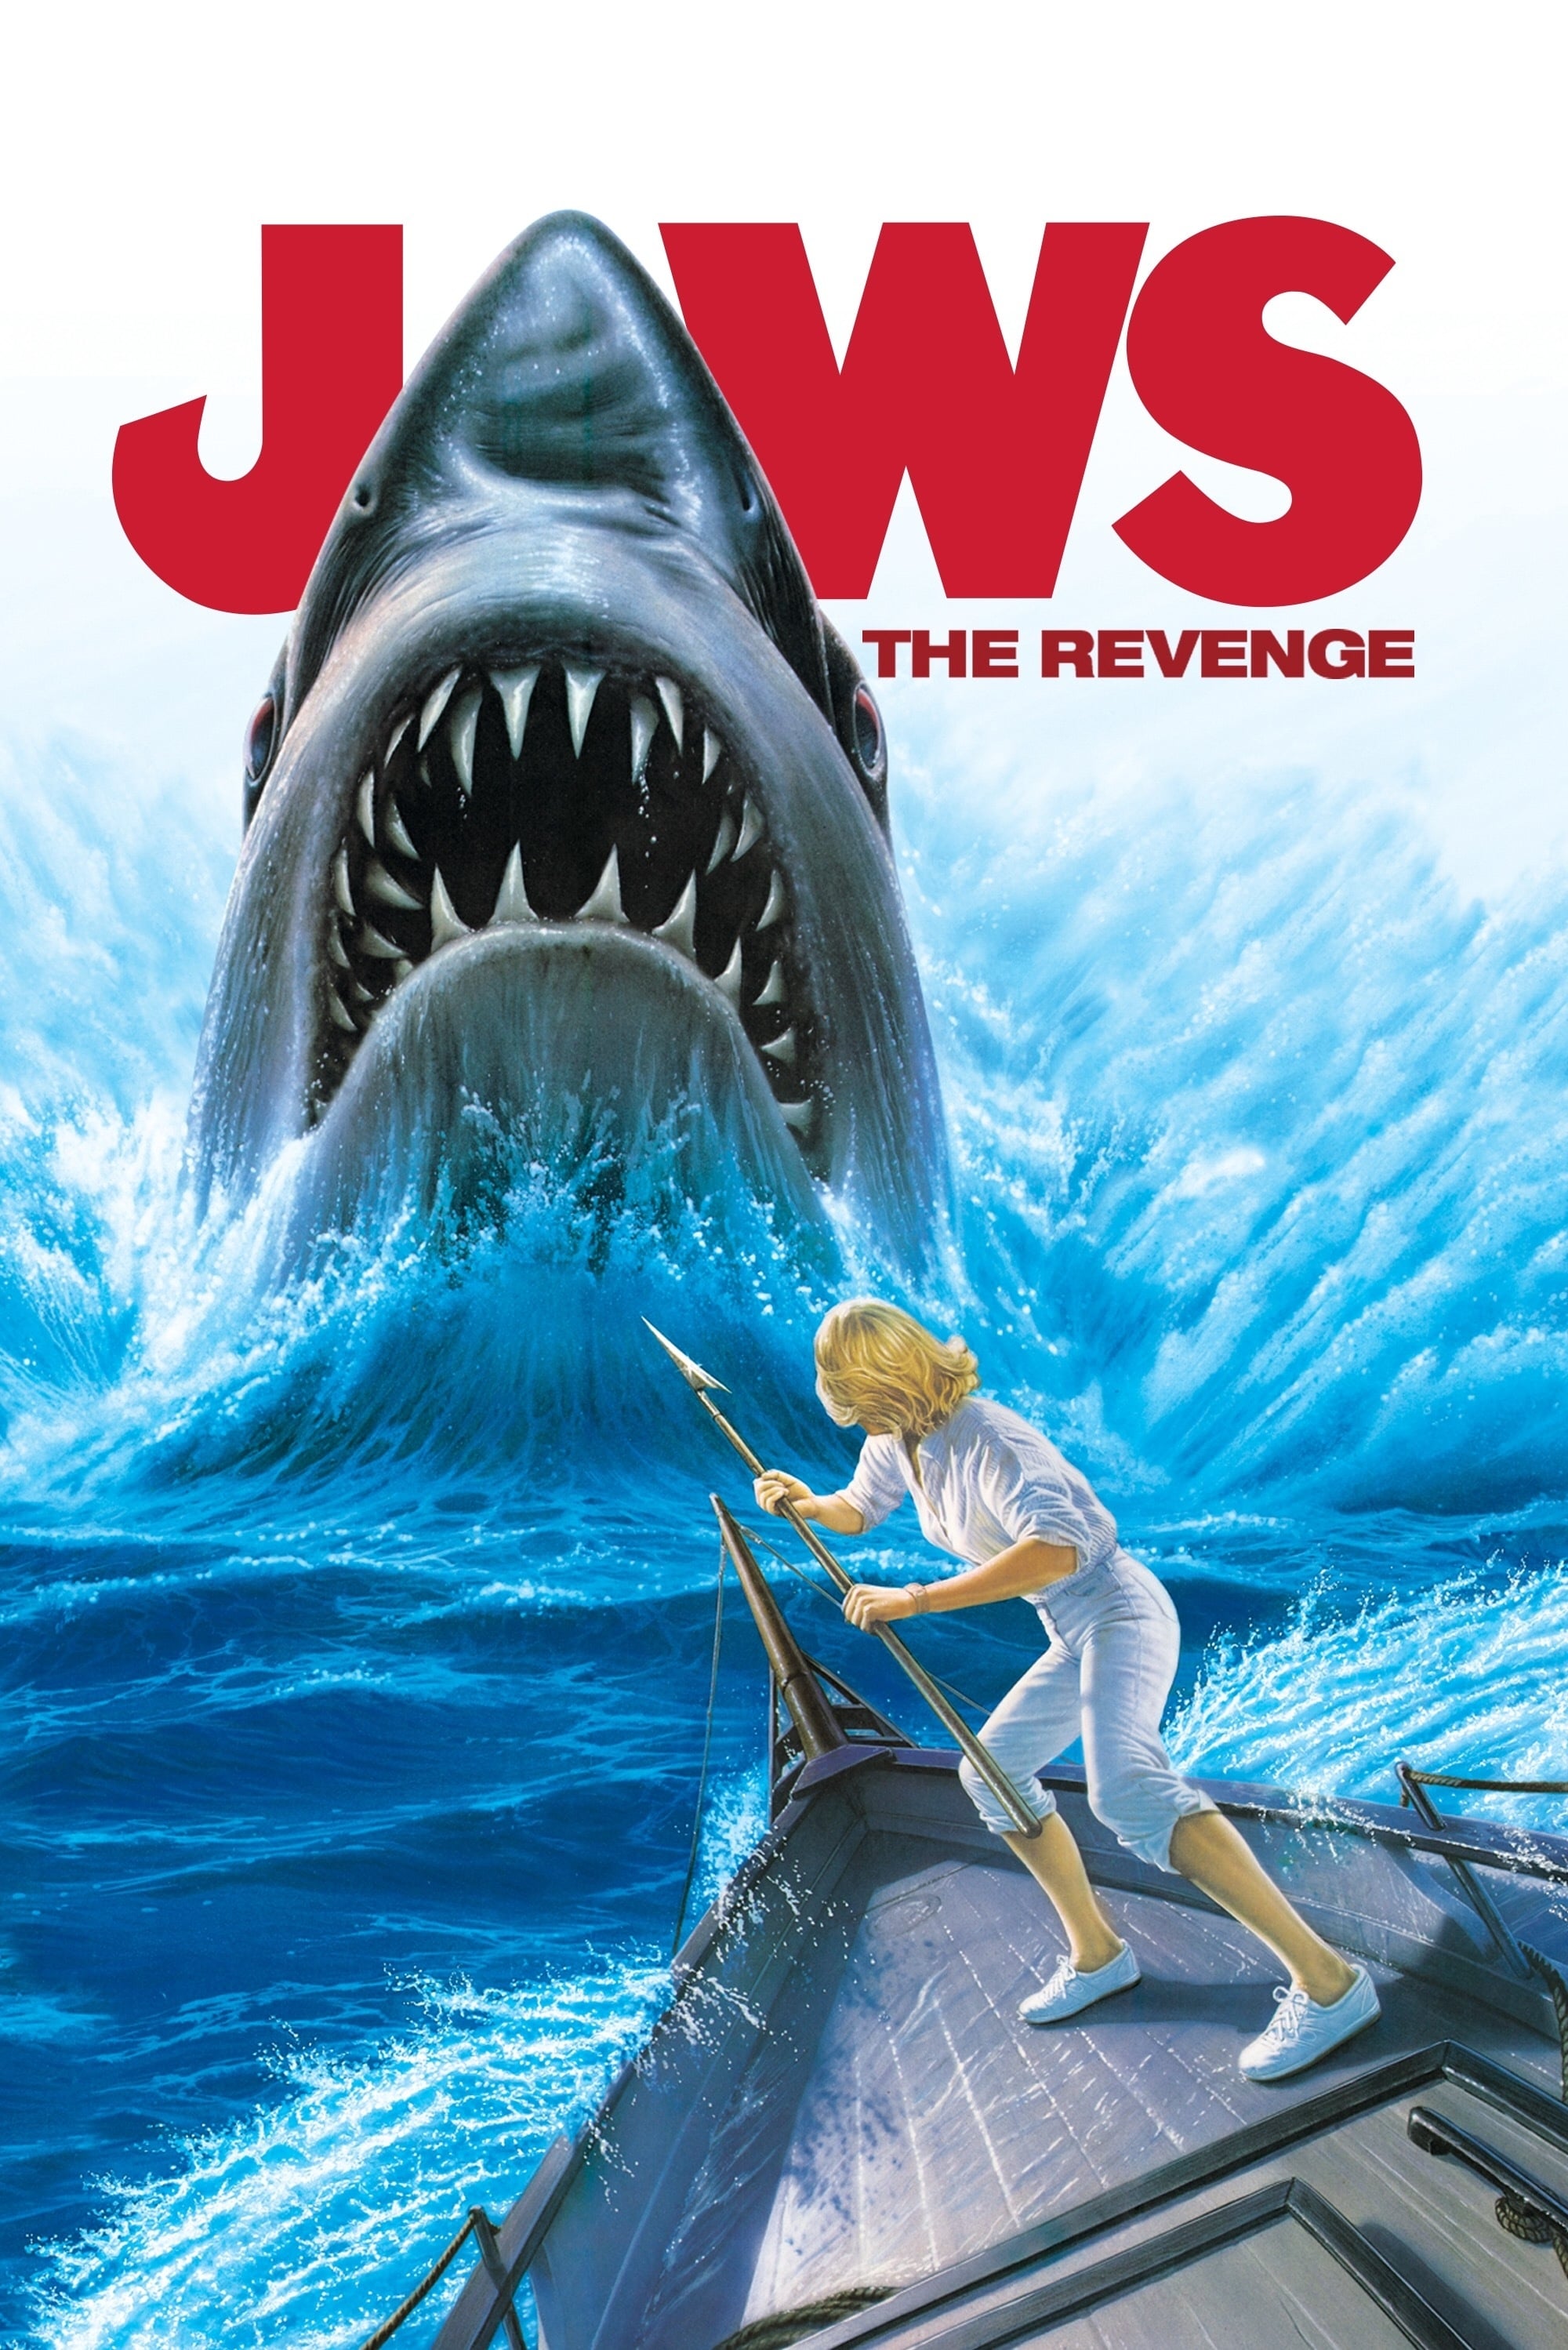 Tiburón, la venganza (1987)